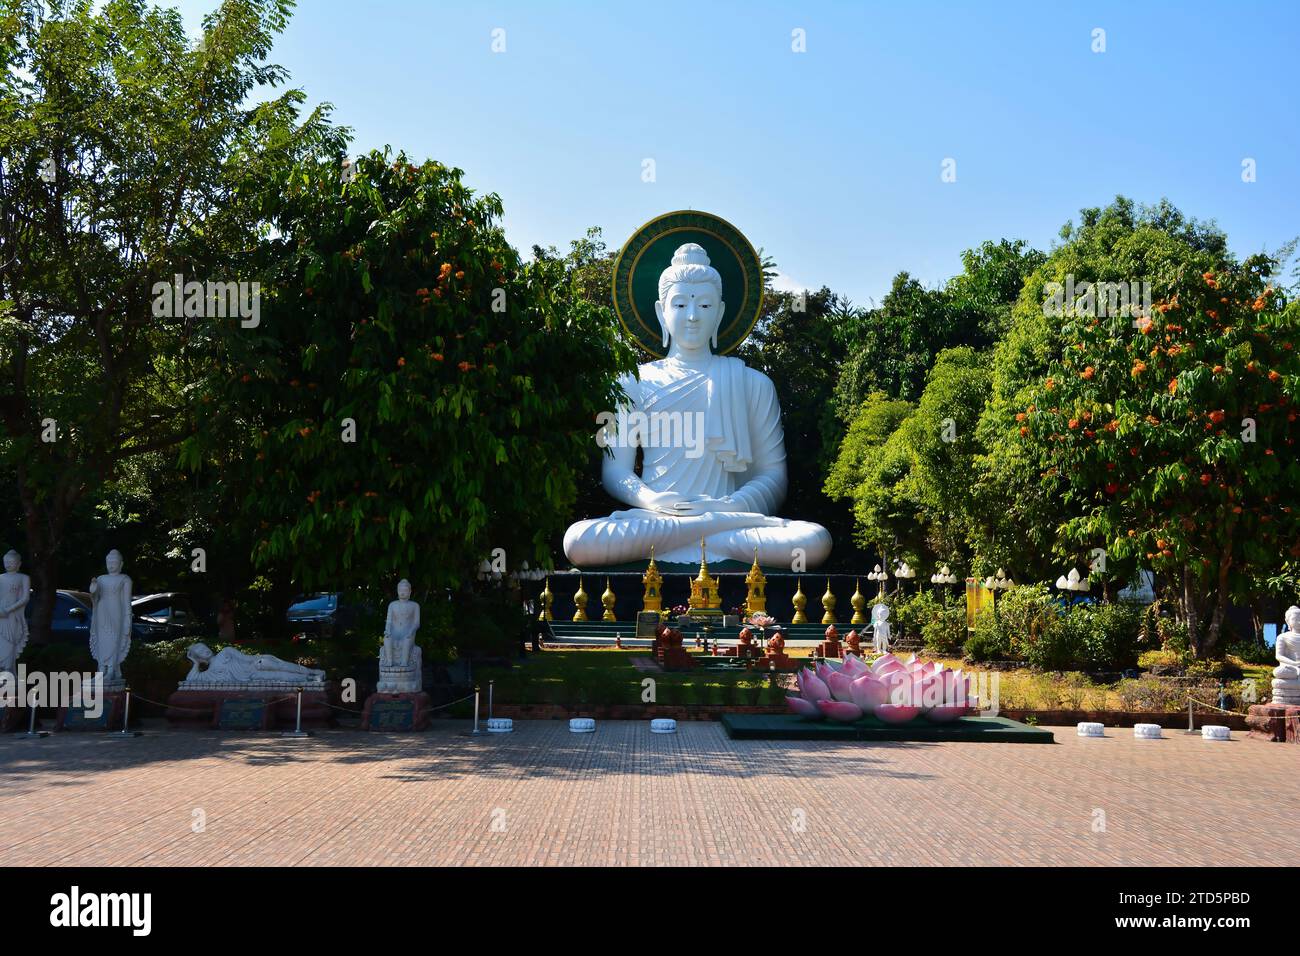 Le parc biologique du bouddha de Doi, dans la province de Chiang Rai en Thaïlande Banque D'Images